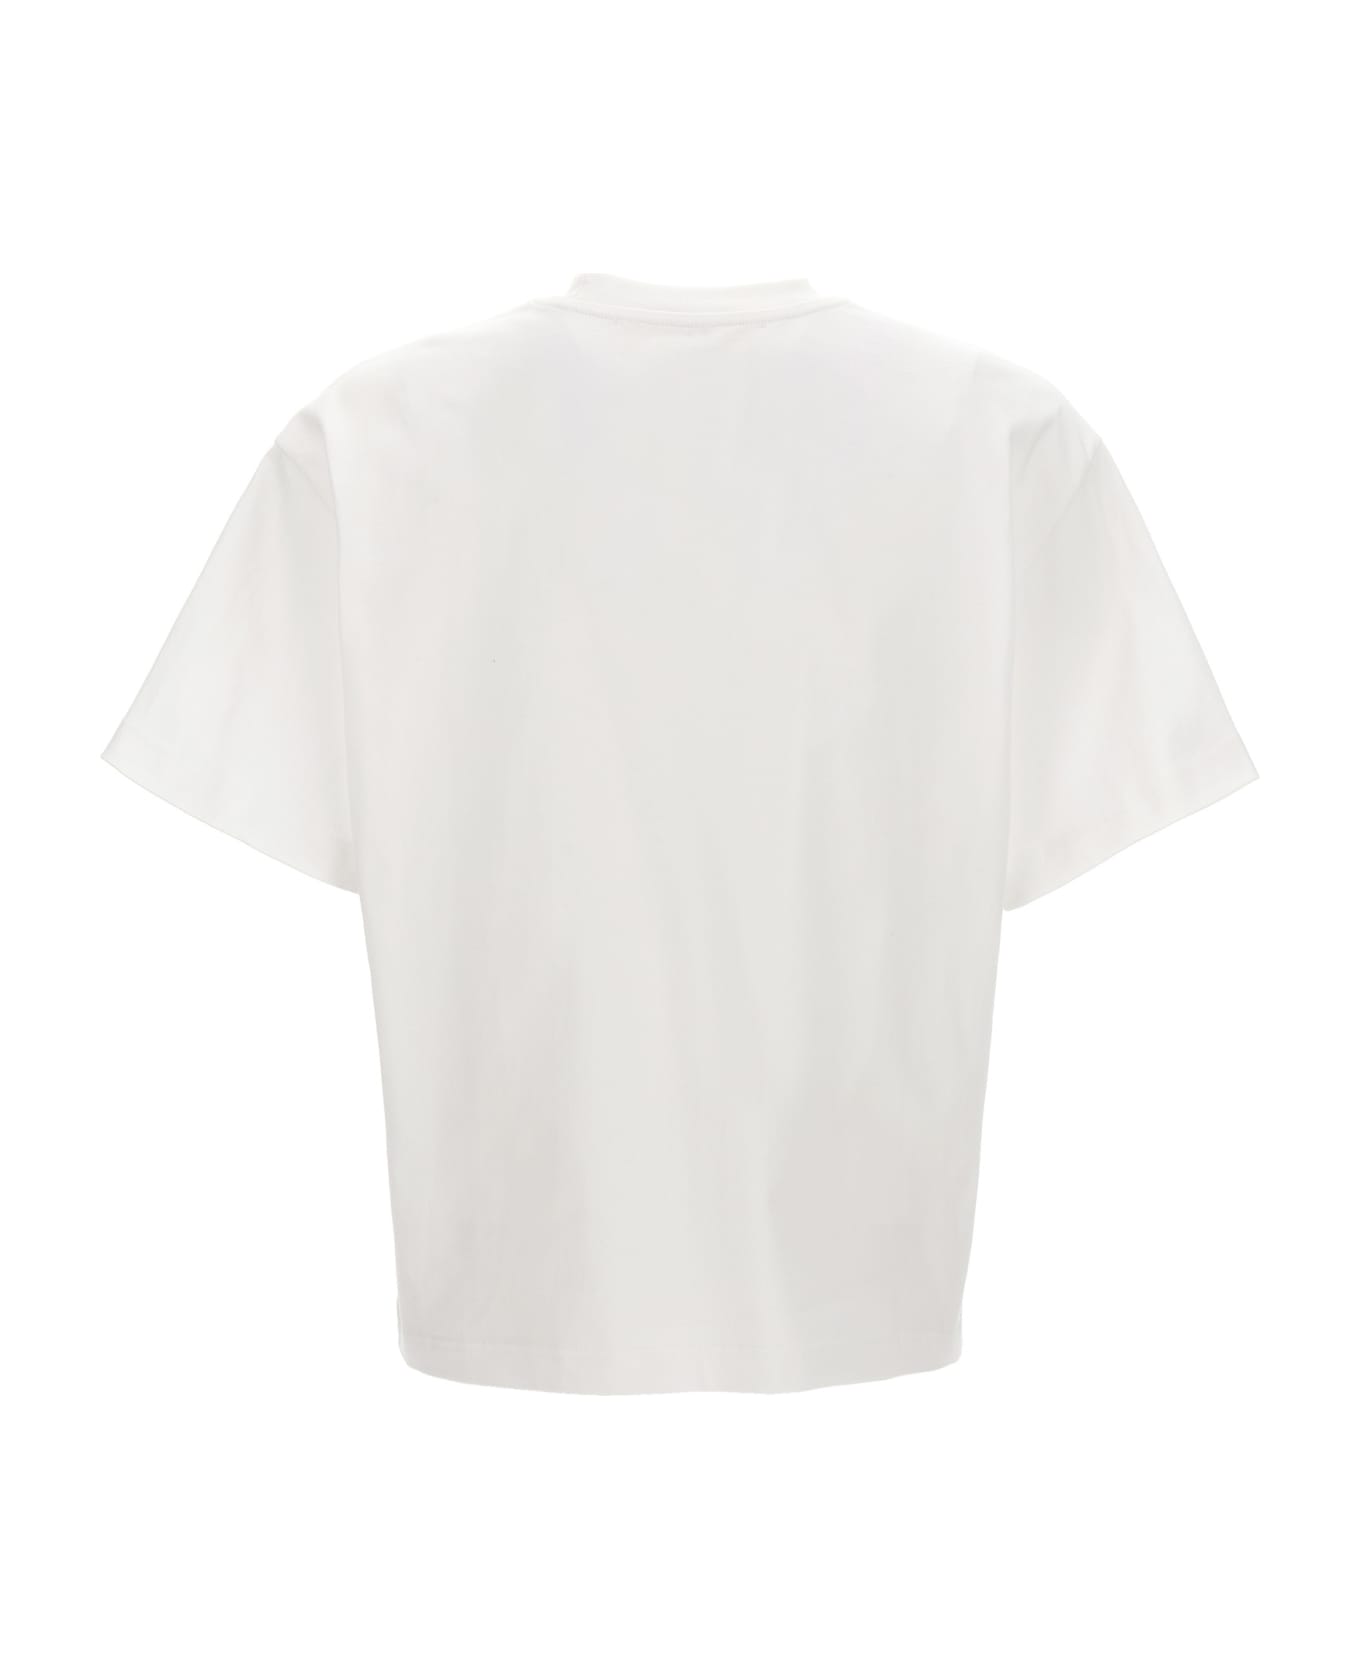 Séfr 'atelier' T-shirt - White